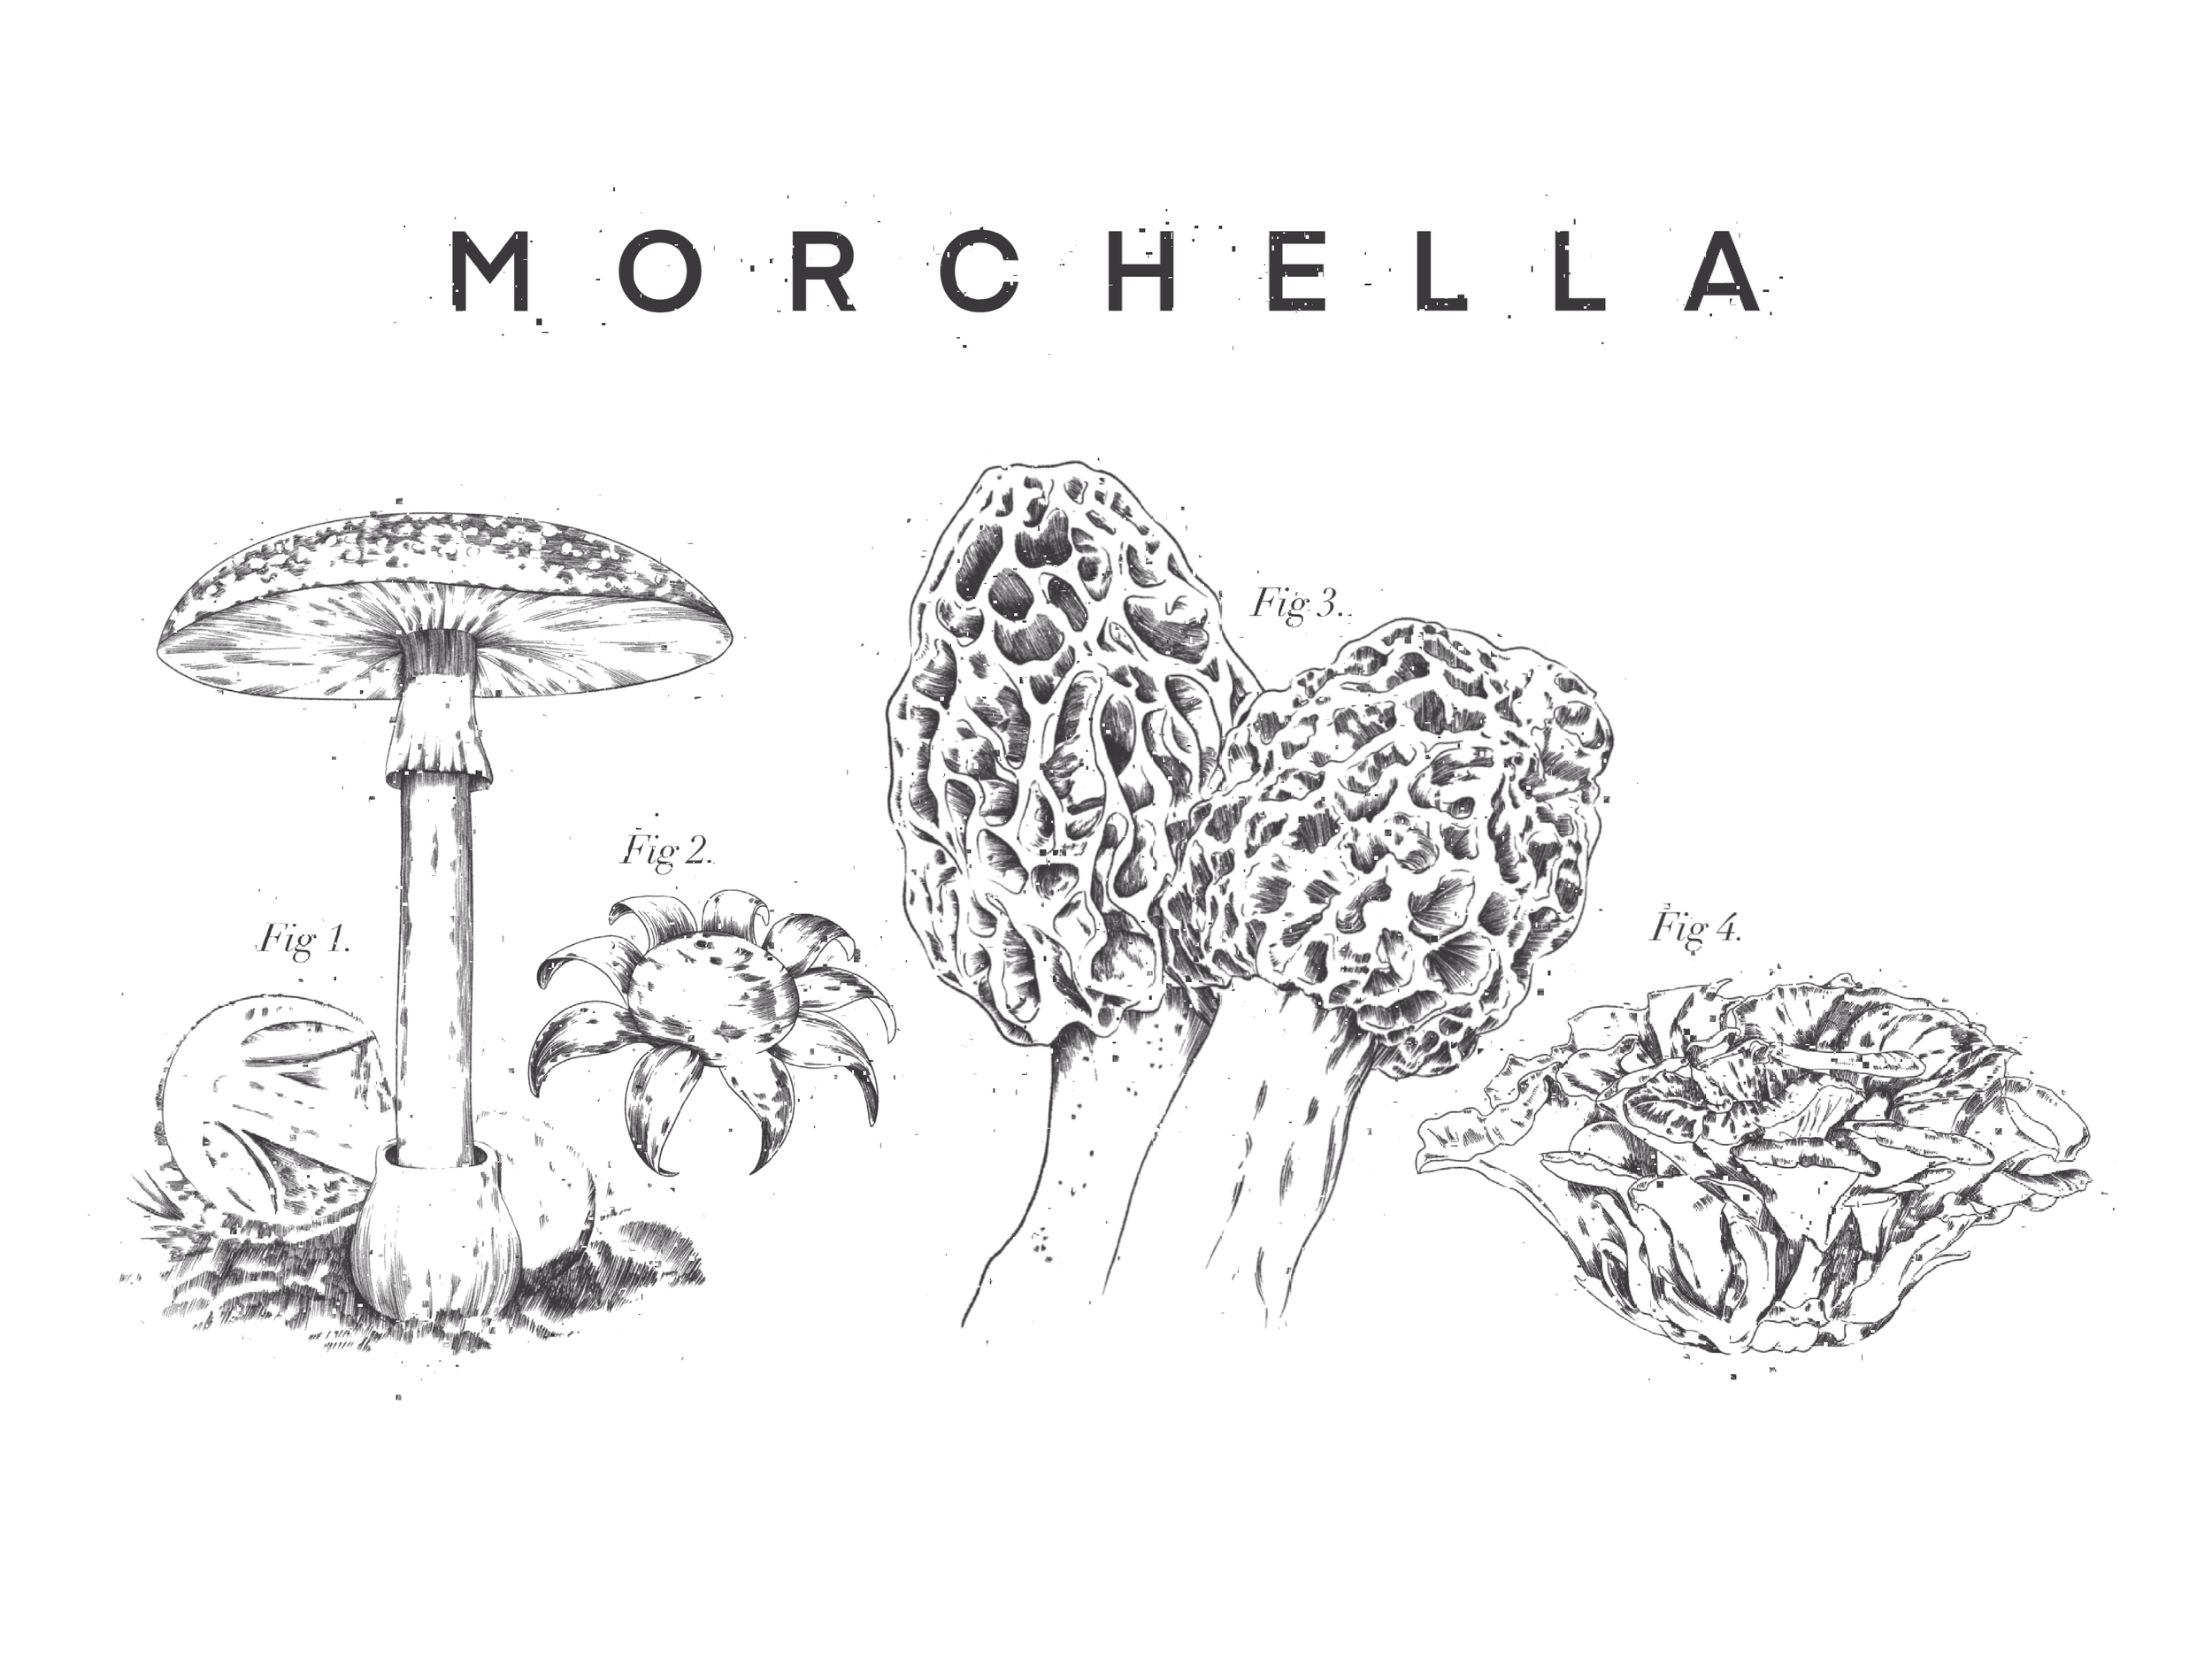  Morchella Dining